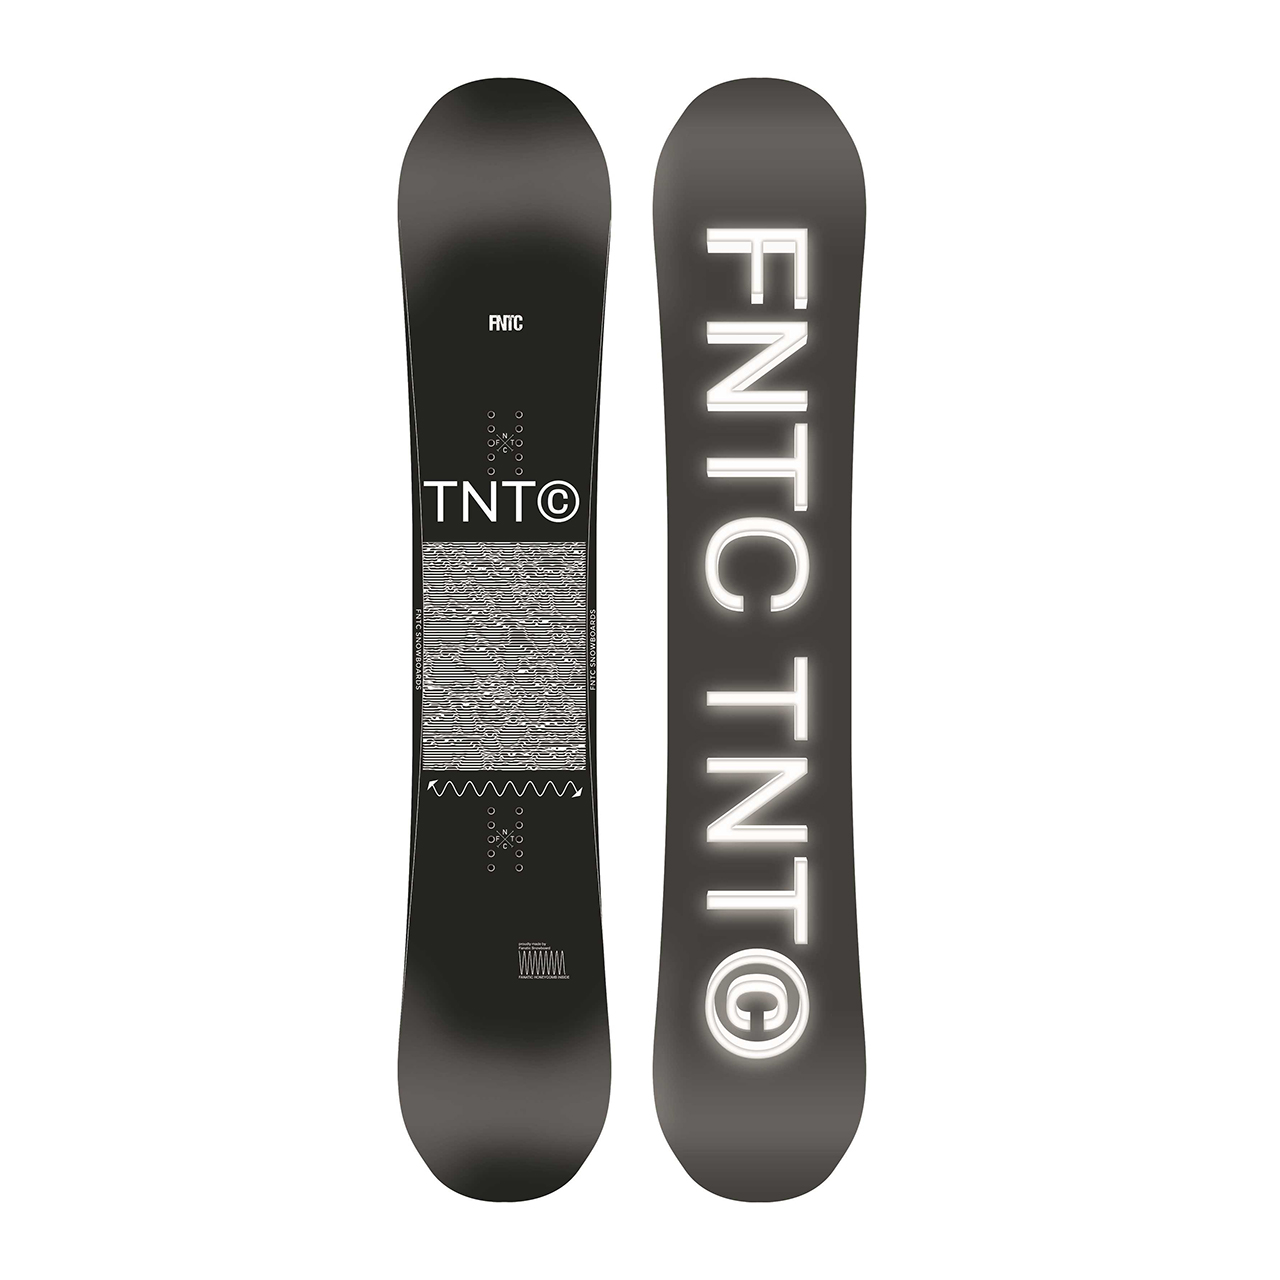 FNTC TNT R 20-21モデル 157センチ 希少 - ボード